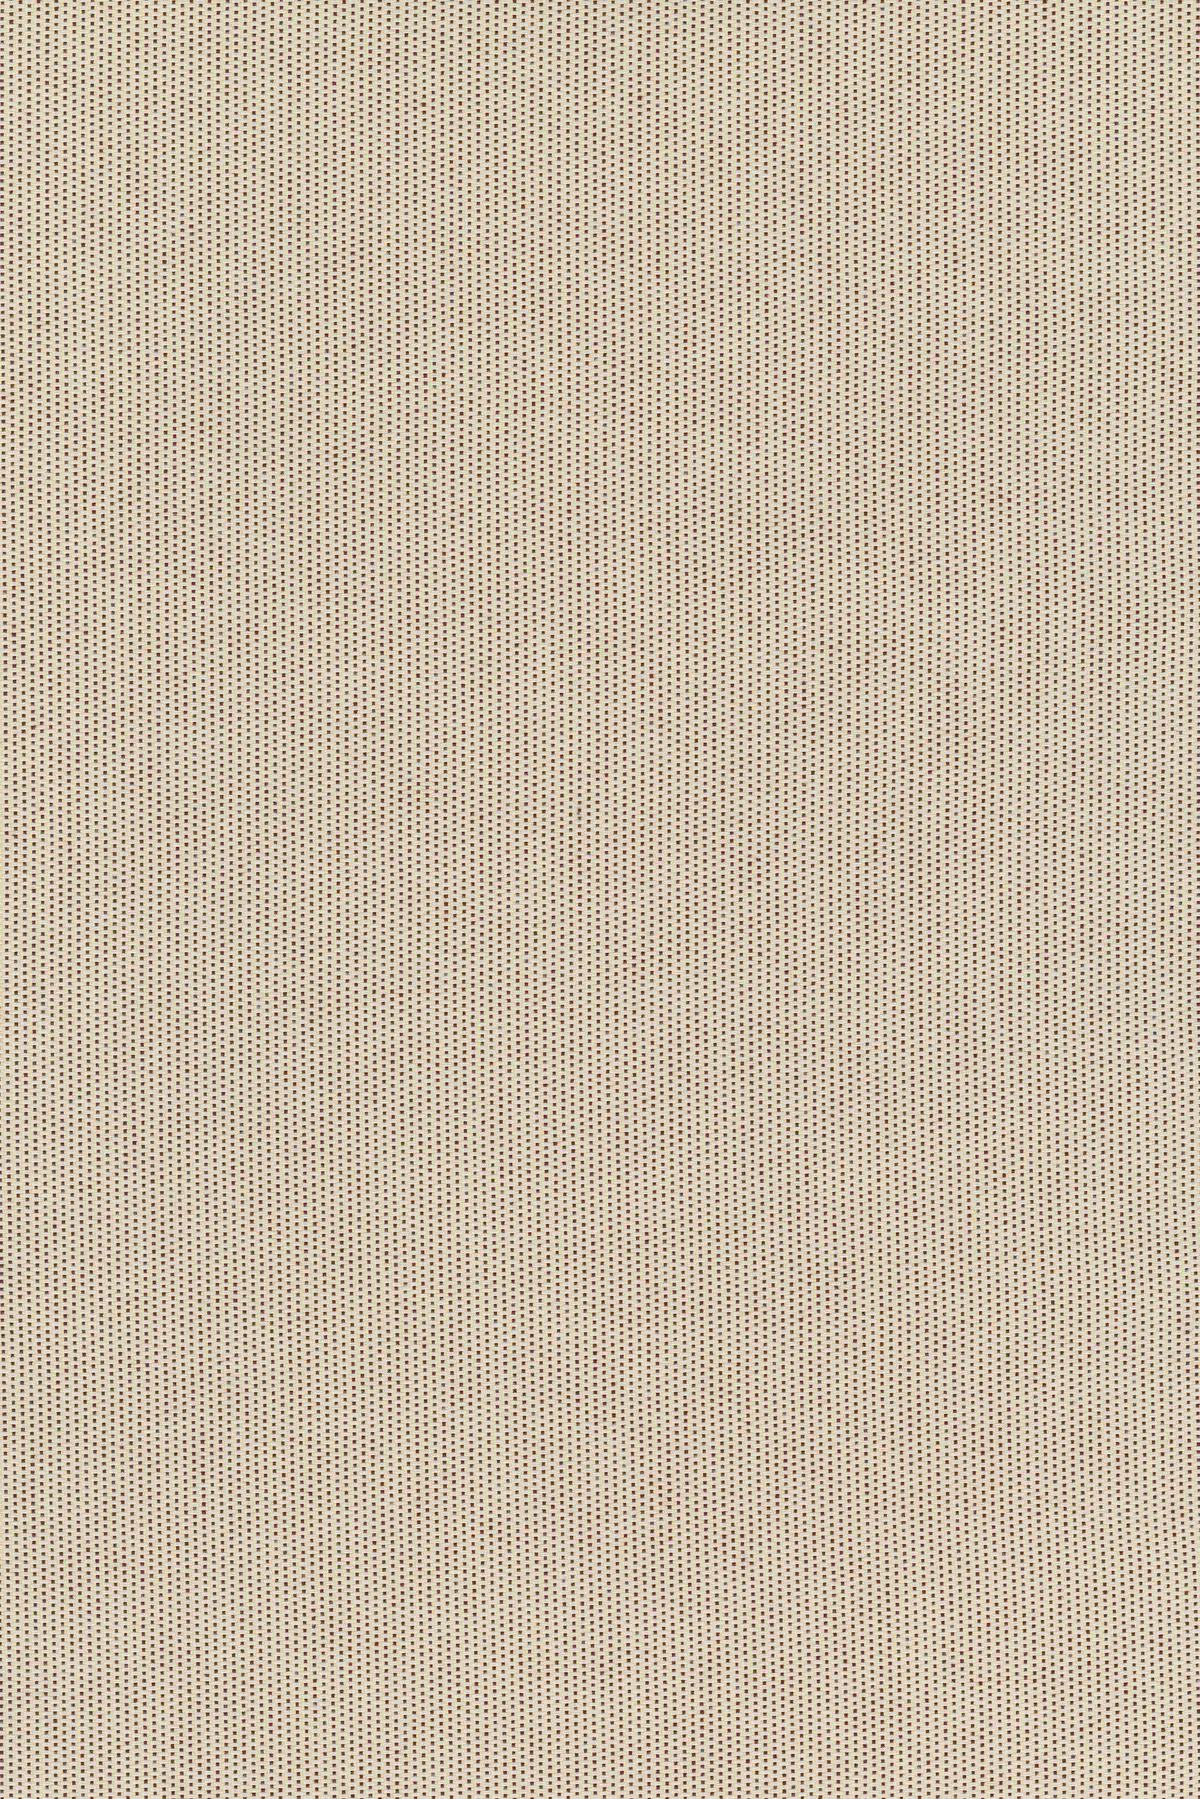 Fabric sample Patio Outdoor 430 beige